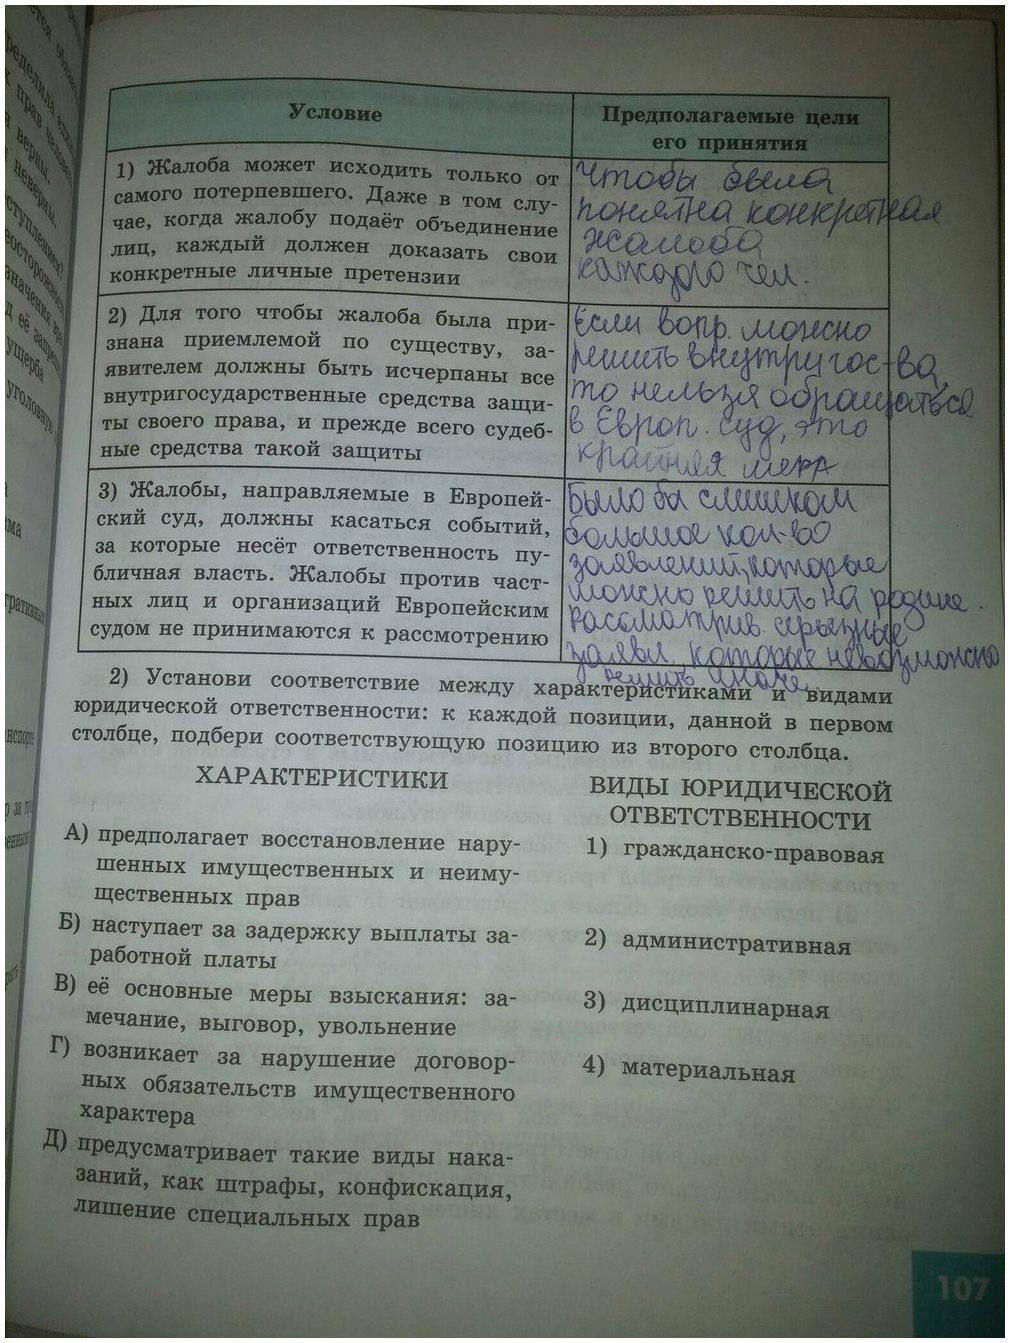 гдз 9 класс рабочая тетрадь страница 107 обществознание Котова, Лискова